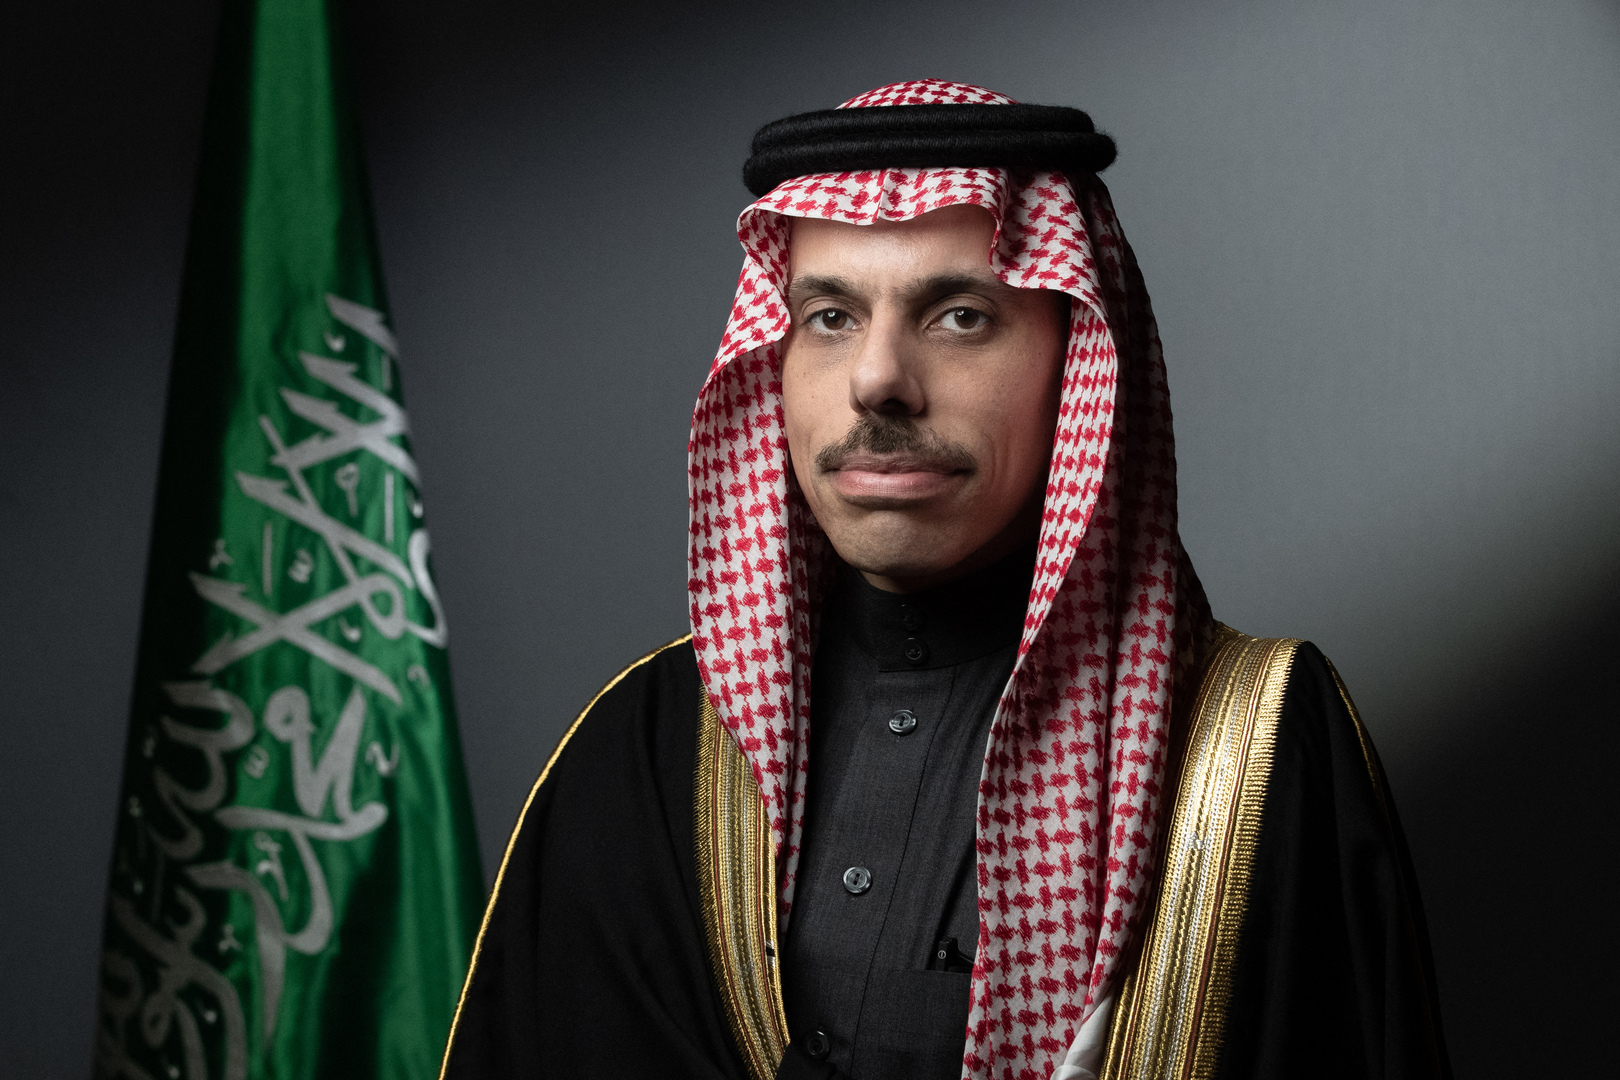 السعودية: منفتحون على الحوار مع إيران وعودة دمشق للحضن العربي لكن من المبكر الحديث عن ذلك